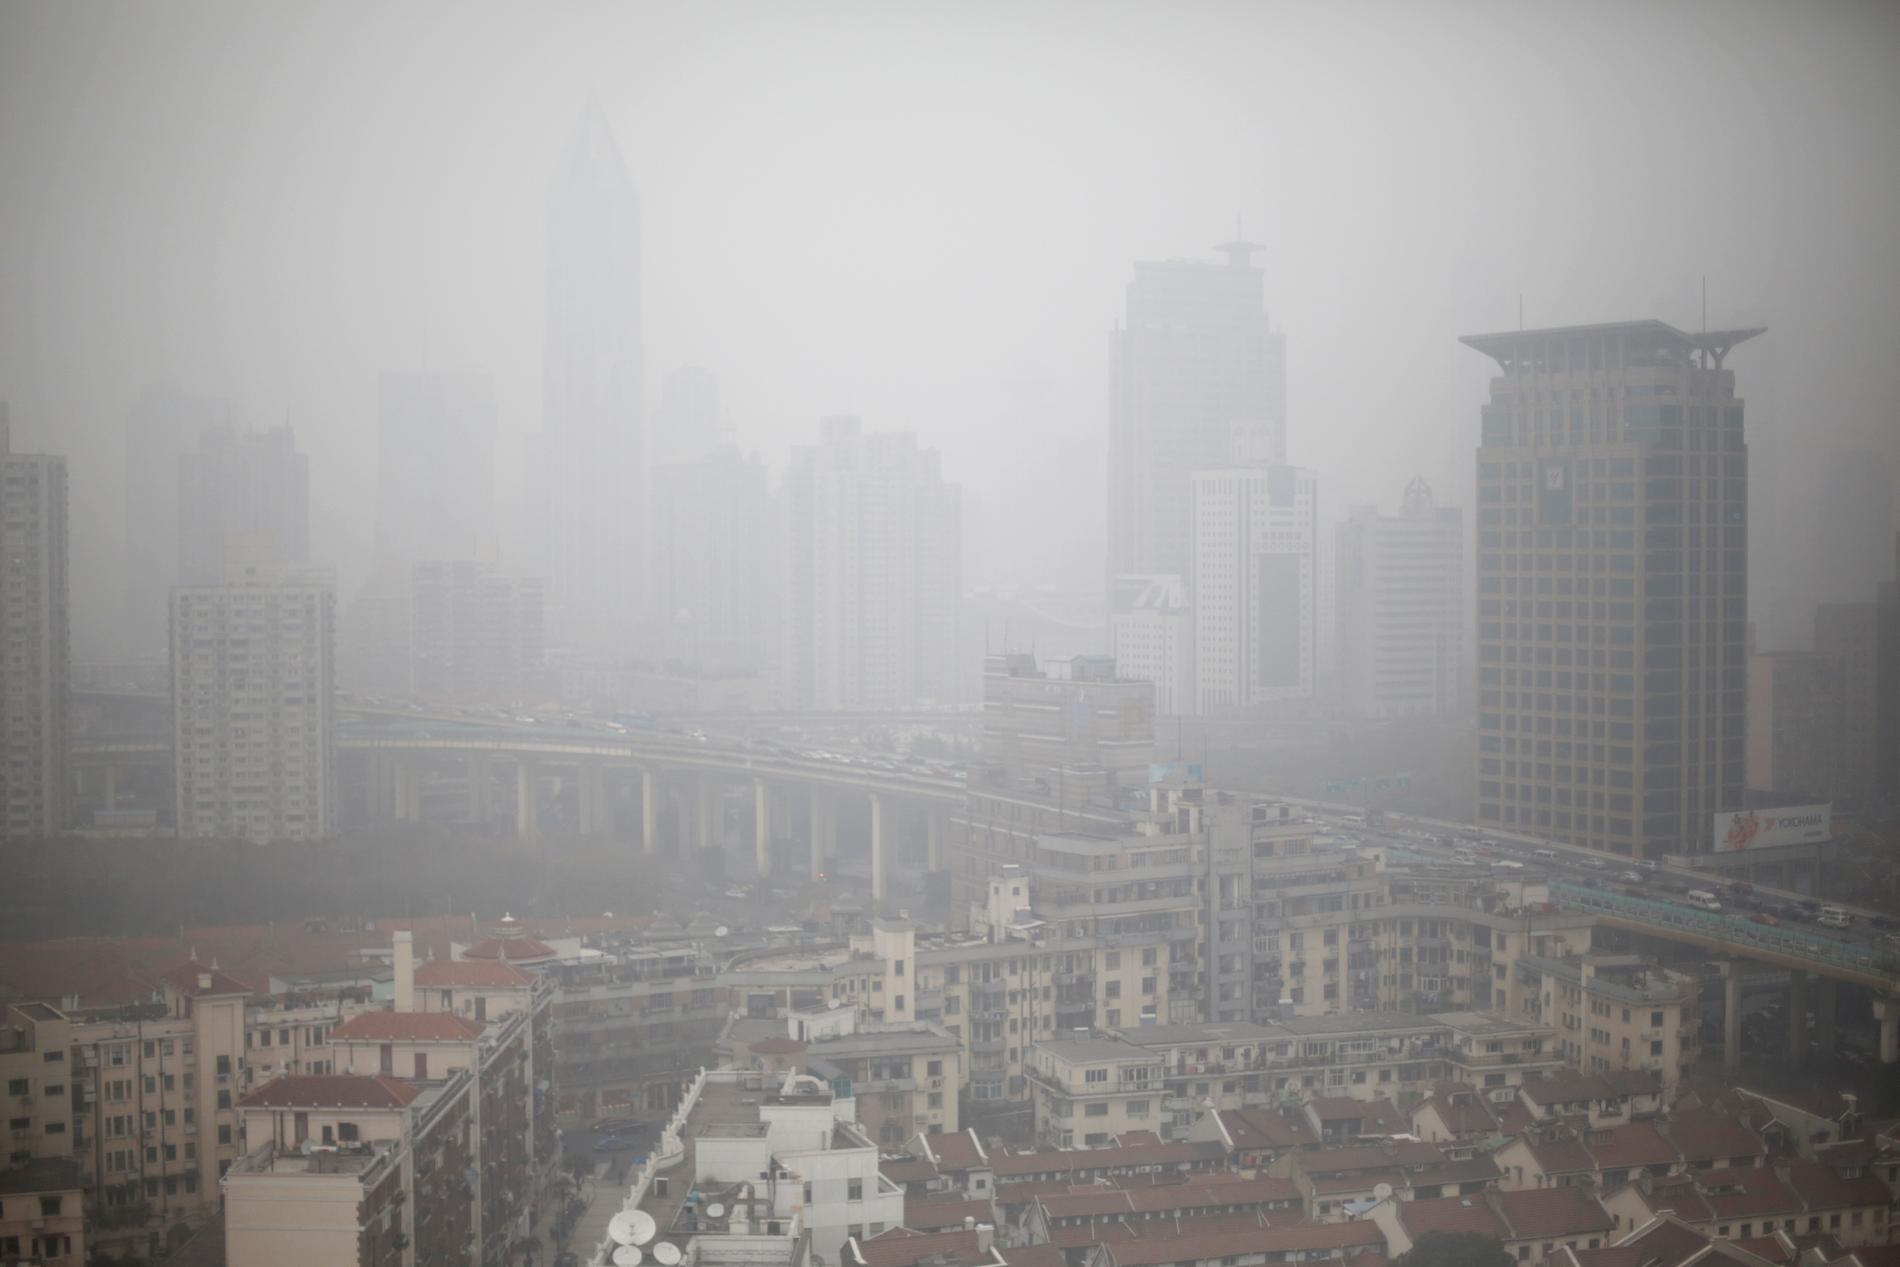 Kolkraften är den viktigaste energikällan i Kina och den största orsaken till landets enorma utsläpp av koldioxid. Kolet har också lett till svåra luftföroreningar i landets städer, som här i Shanghai.